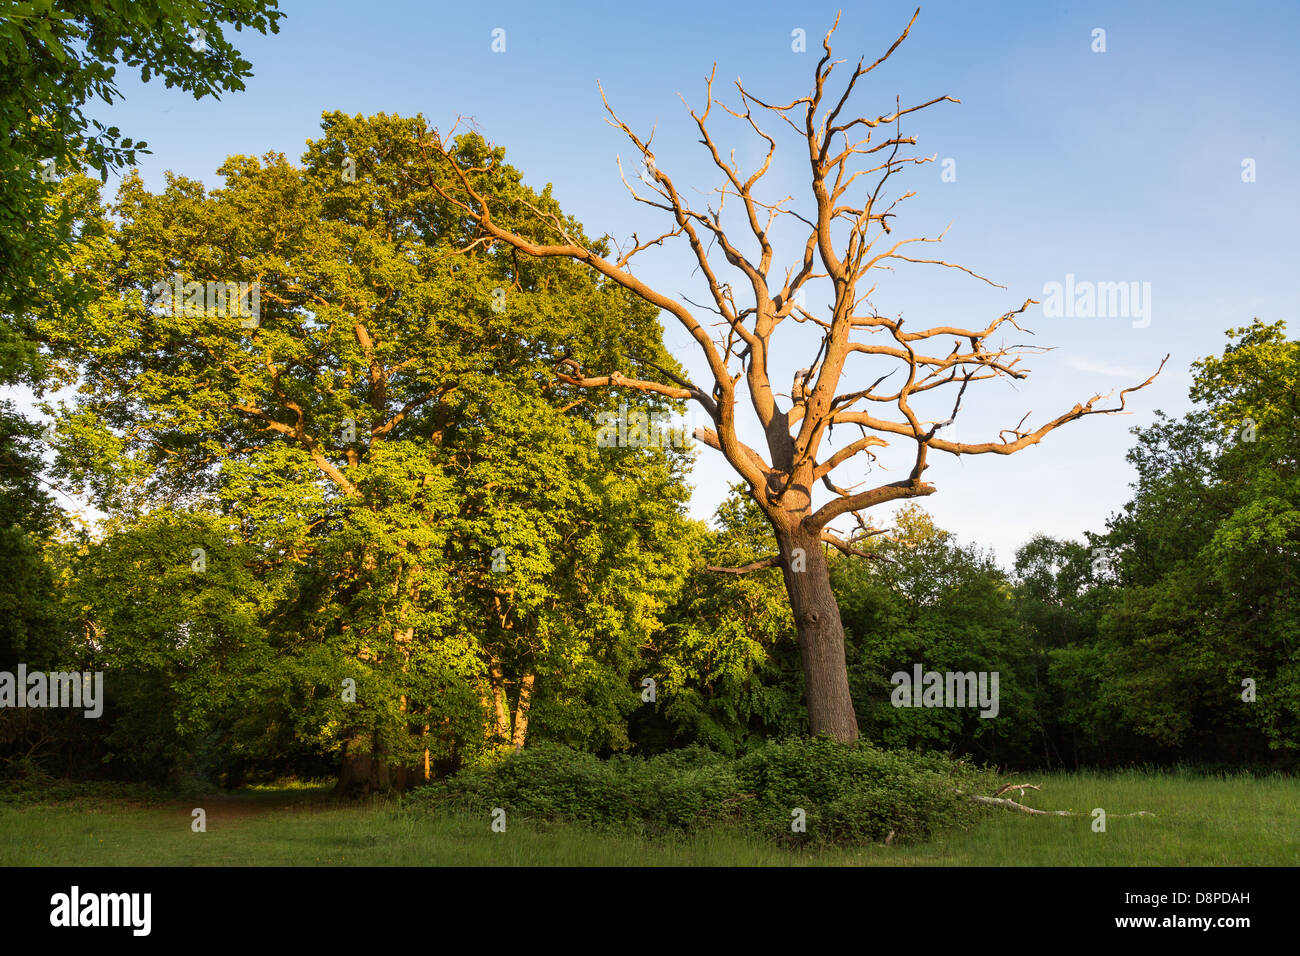 La vida y la muerte, el árbol muerto contra el árbol vivo en la noche la luz solar Foto de stock